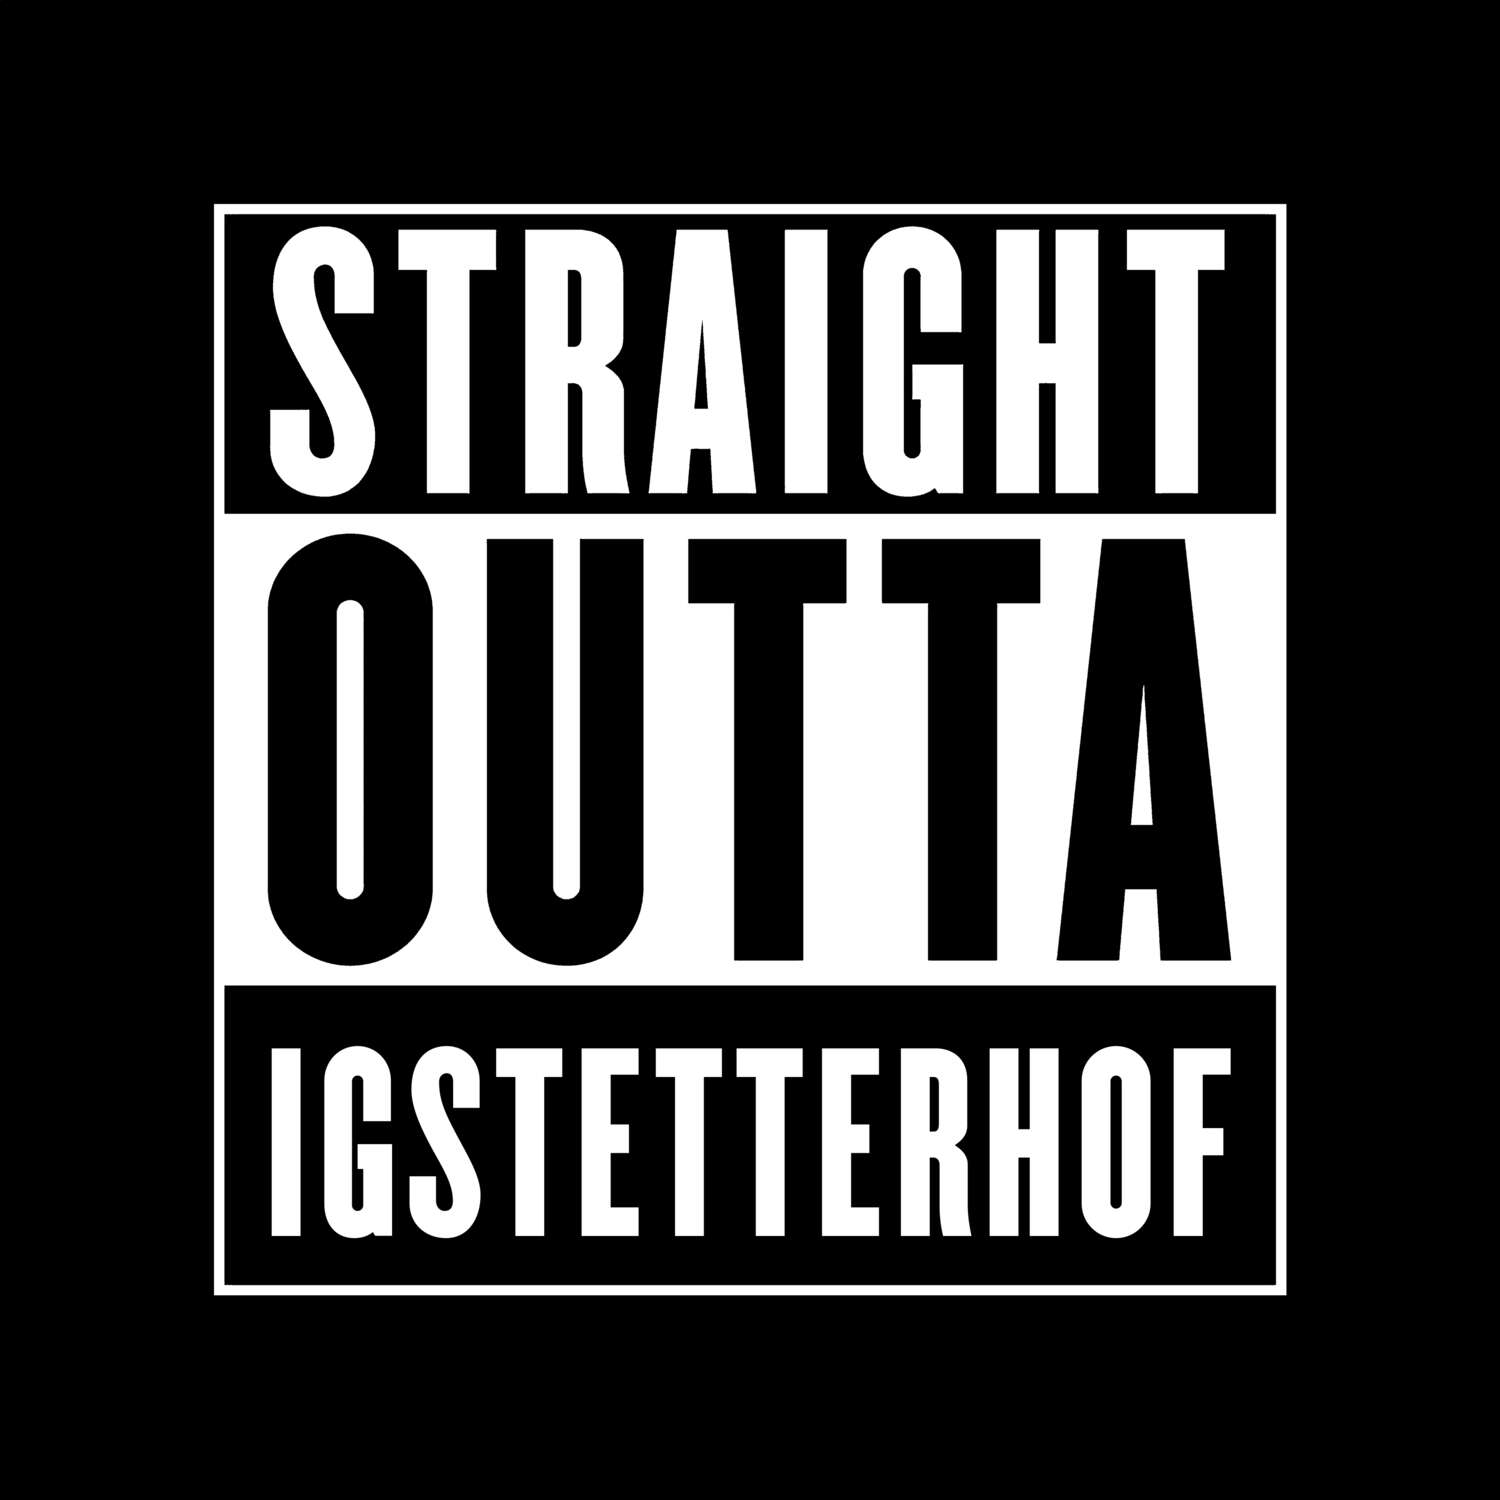 Igstetterhof T-Shirt »Straight Outta«